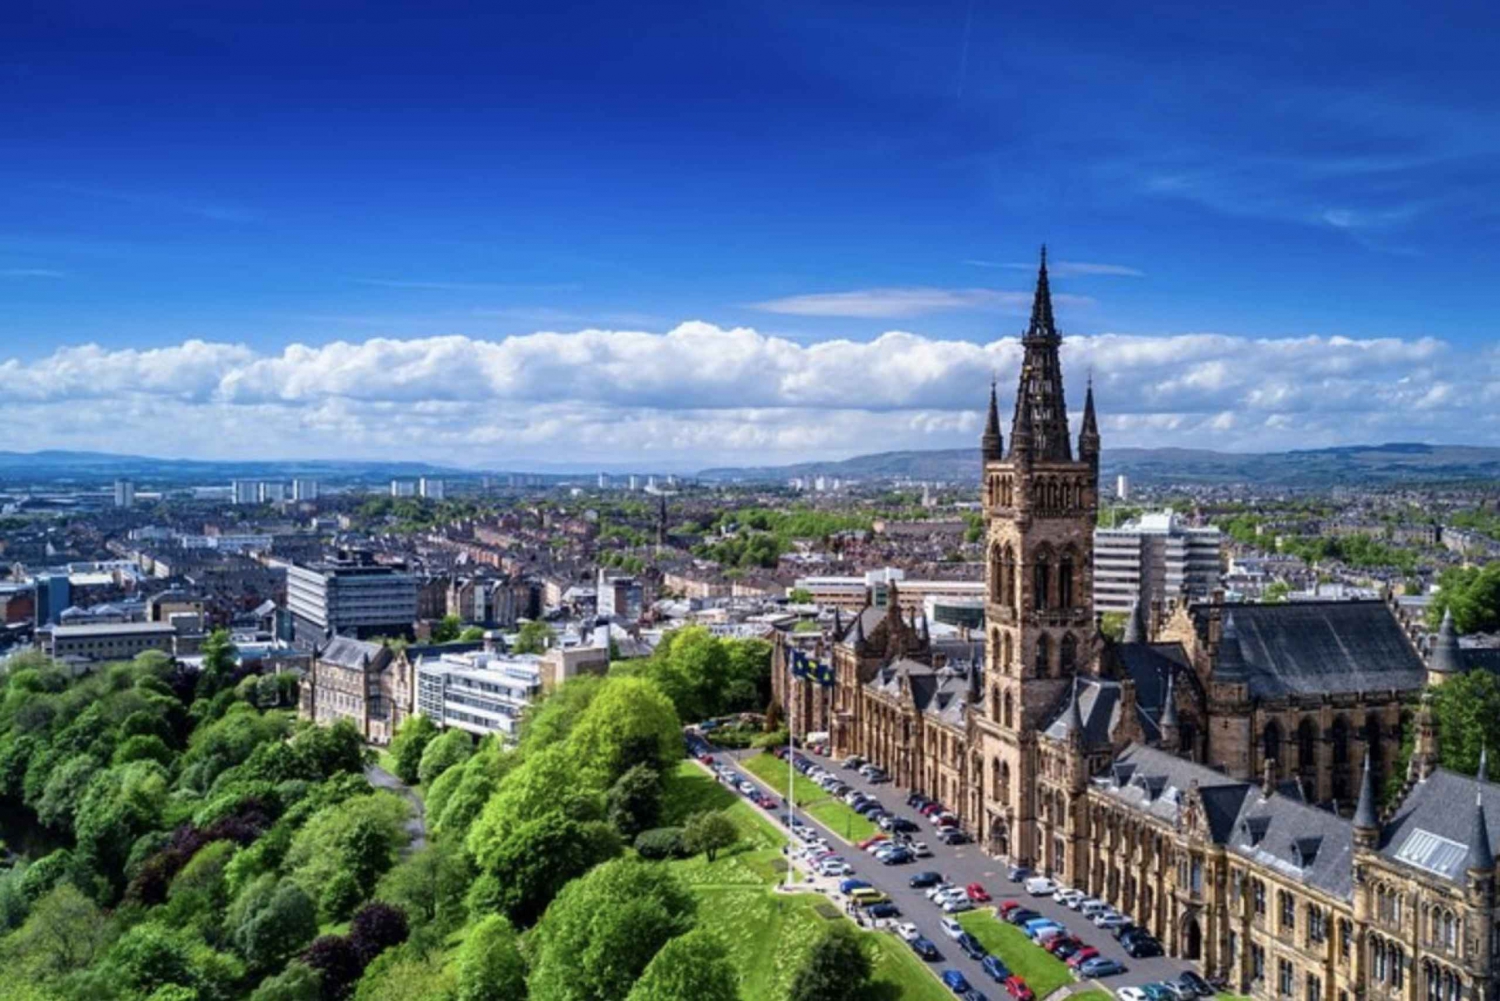 Edinburghista: Glasgow City Day Tour in Luxury MPV